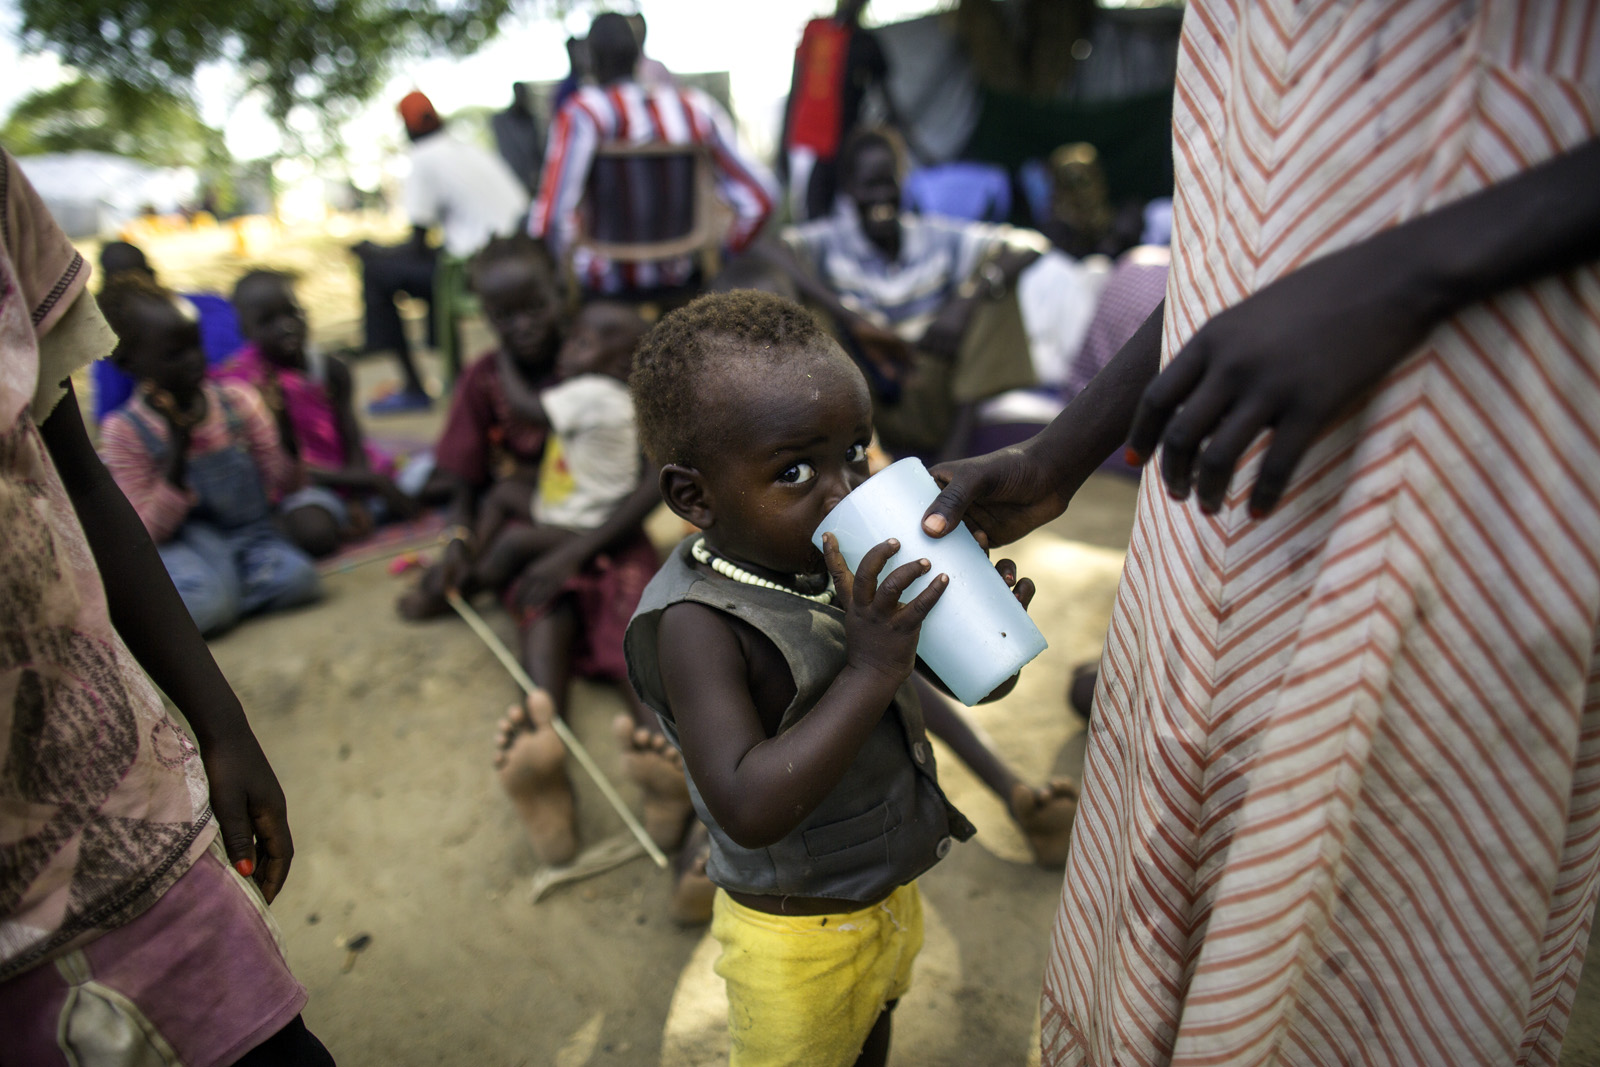 為了逃避戰火，逾百萬南蘇丹人被迫離開家園，棲身於國內外多個營地。除了面對營養不良的問題，衛生環境亦很惡劣。樂施會除了為災民提供糧食及潔淨食水之外，亦興建供水系統及廁所，以防當地爆發疫情，釀成更大的災難。（Kieran Doherty/Oxfam）